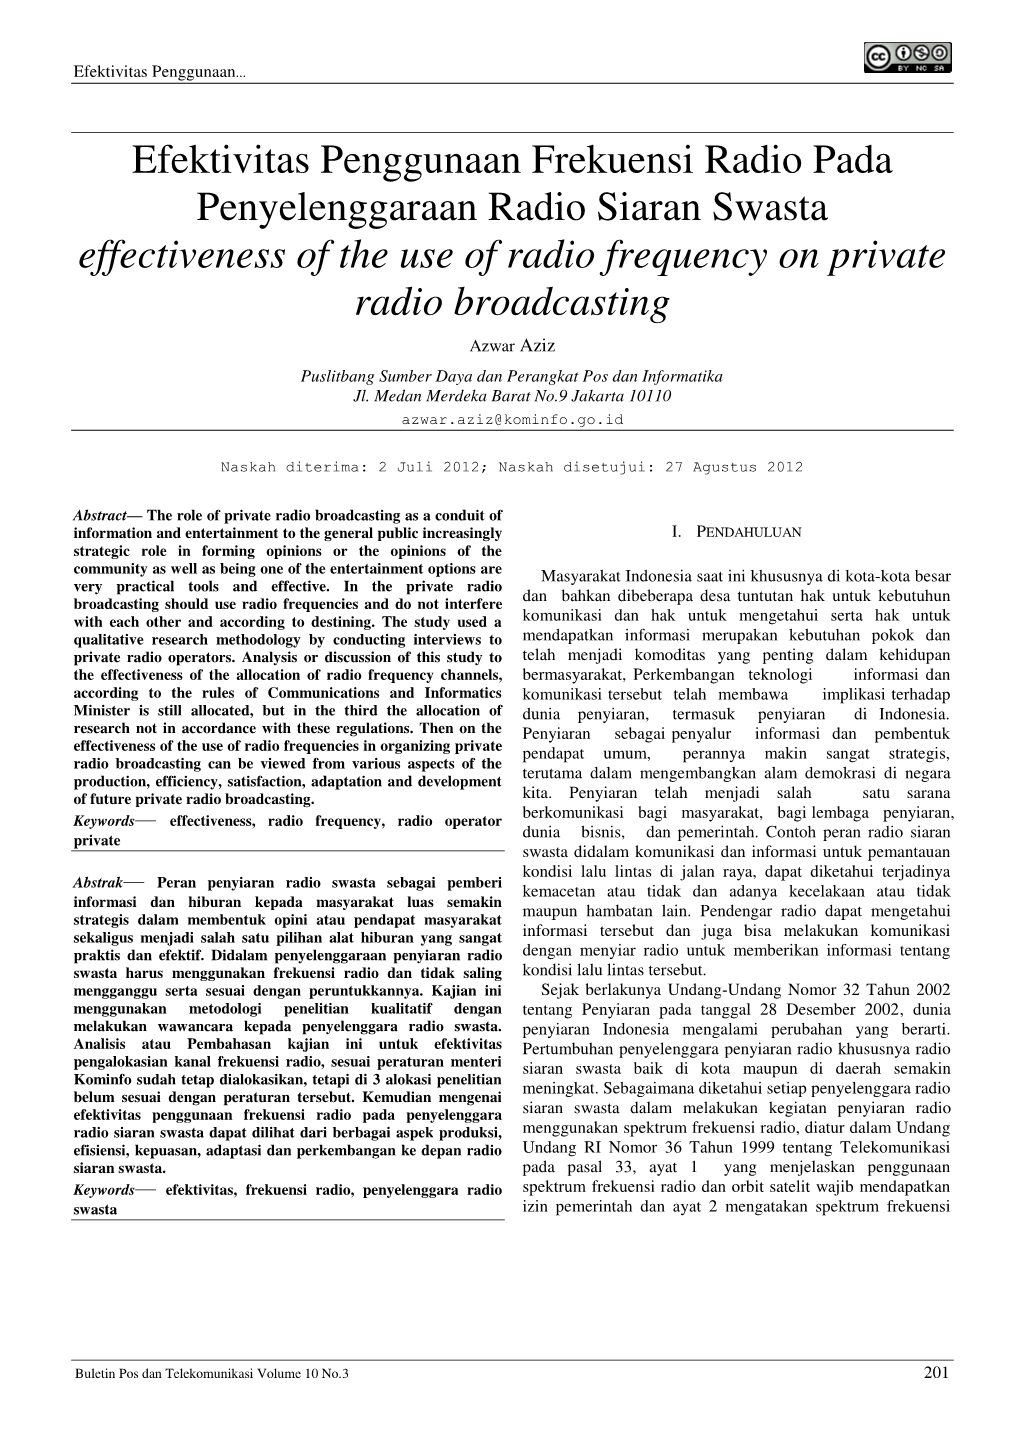 Efektivitas Penggunaan Frekuensi Radio Pada Penyelenggaraan